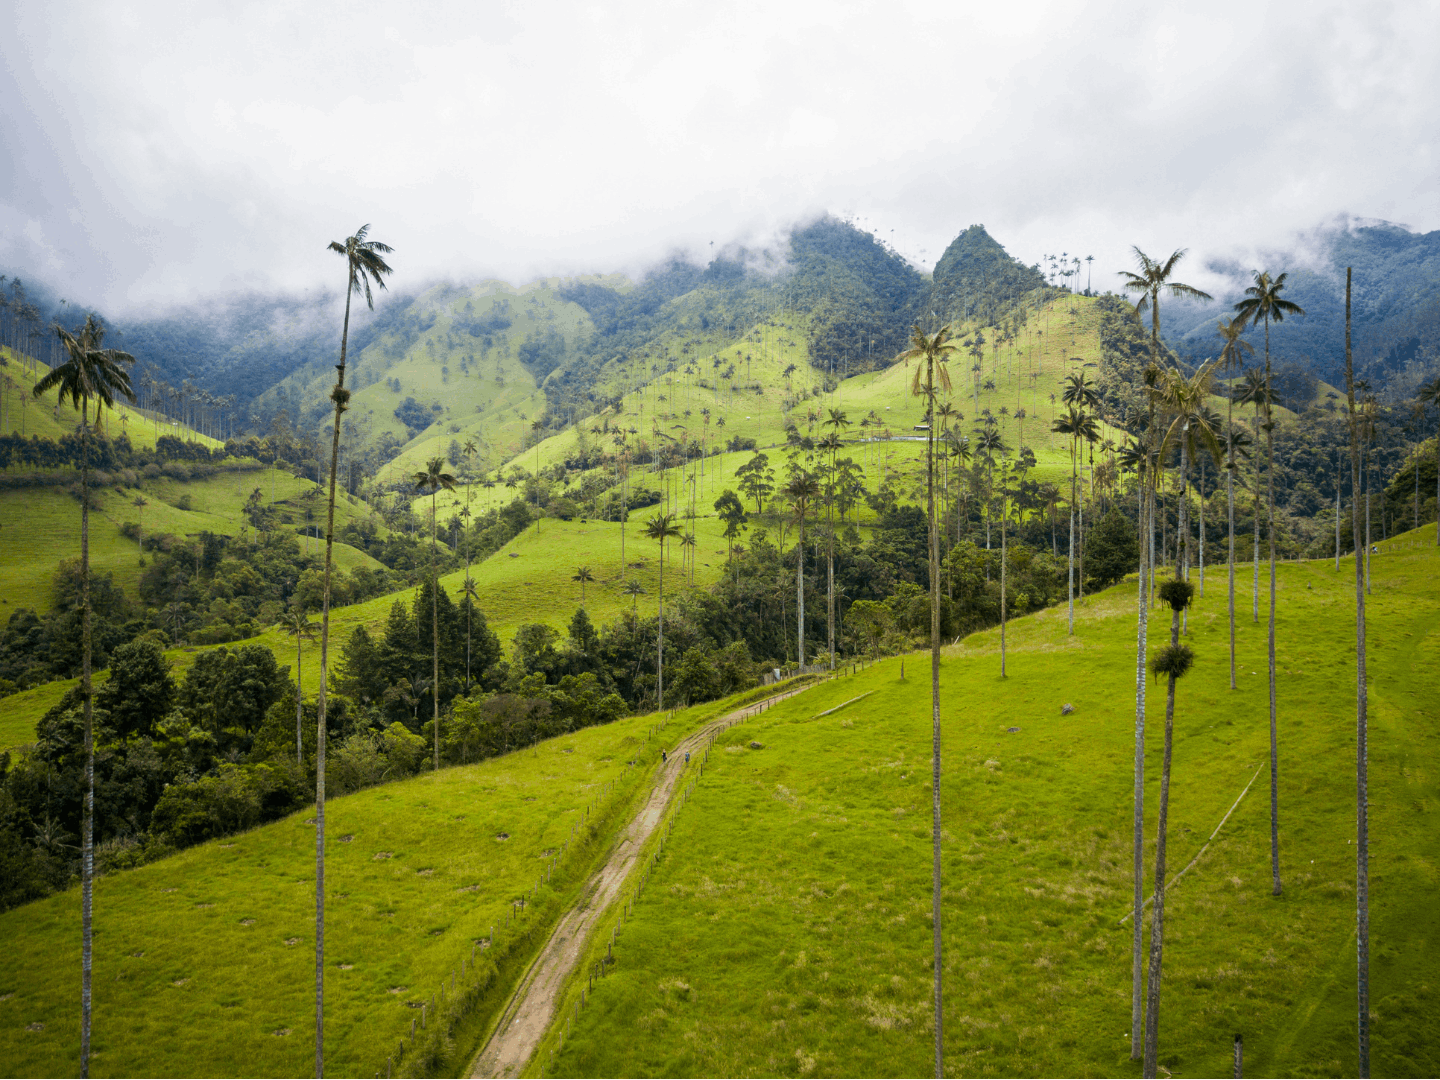 Tipico villaggio coloniale e la palma da cera, simbolo nazionale della Colombia